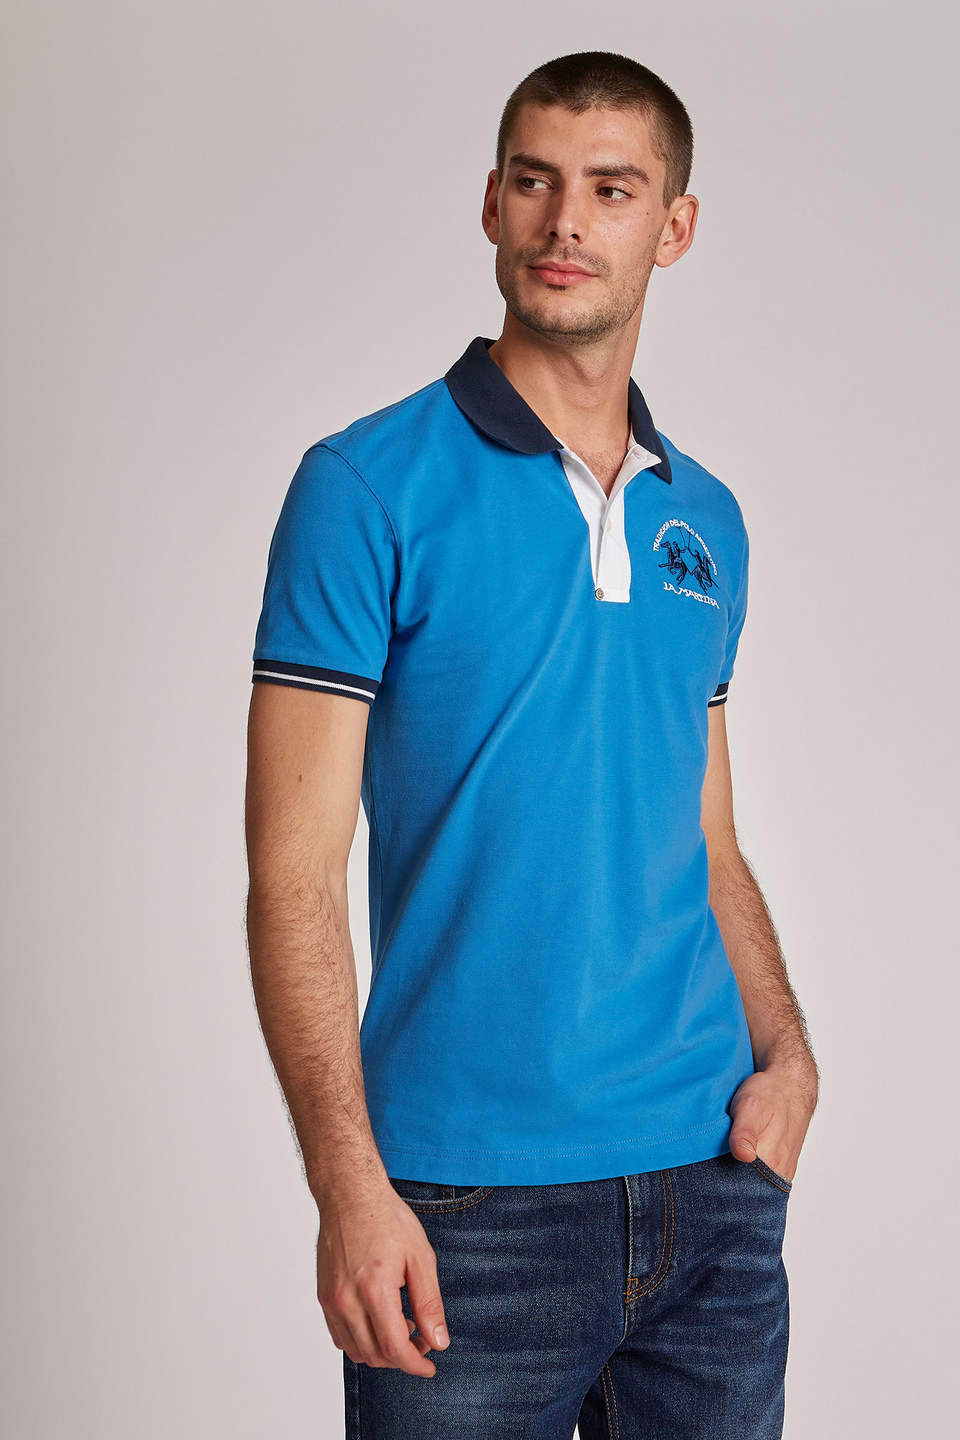 Herren-Poloshirt aus Stretch-Baumwolle mit kurzen Ärmeln im Slim Fit | La Martina - Official Online Shop